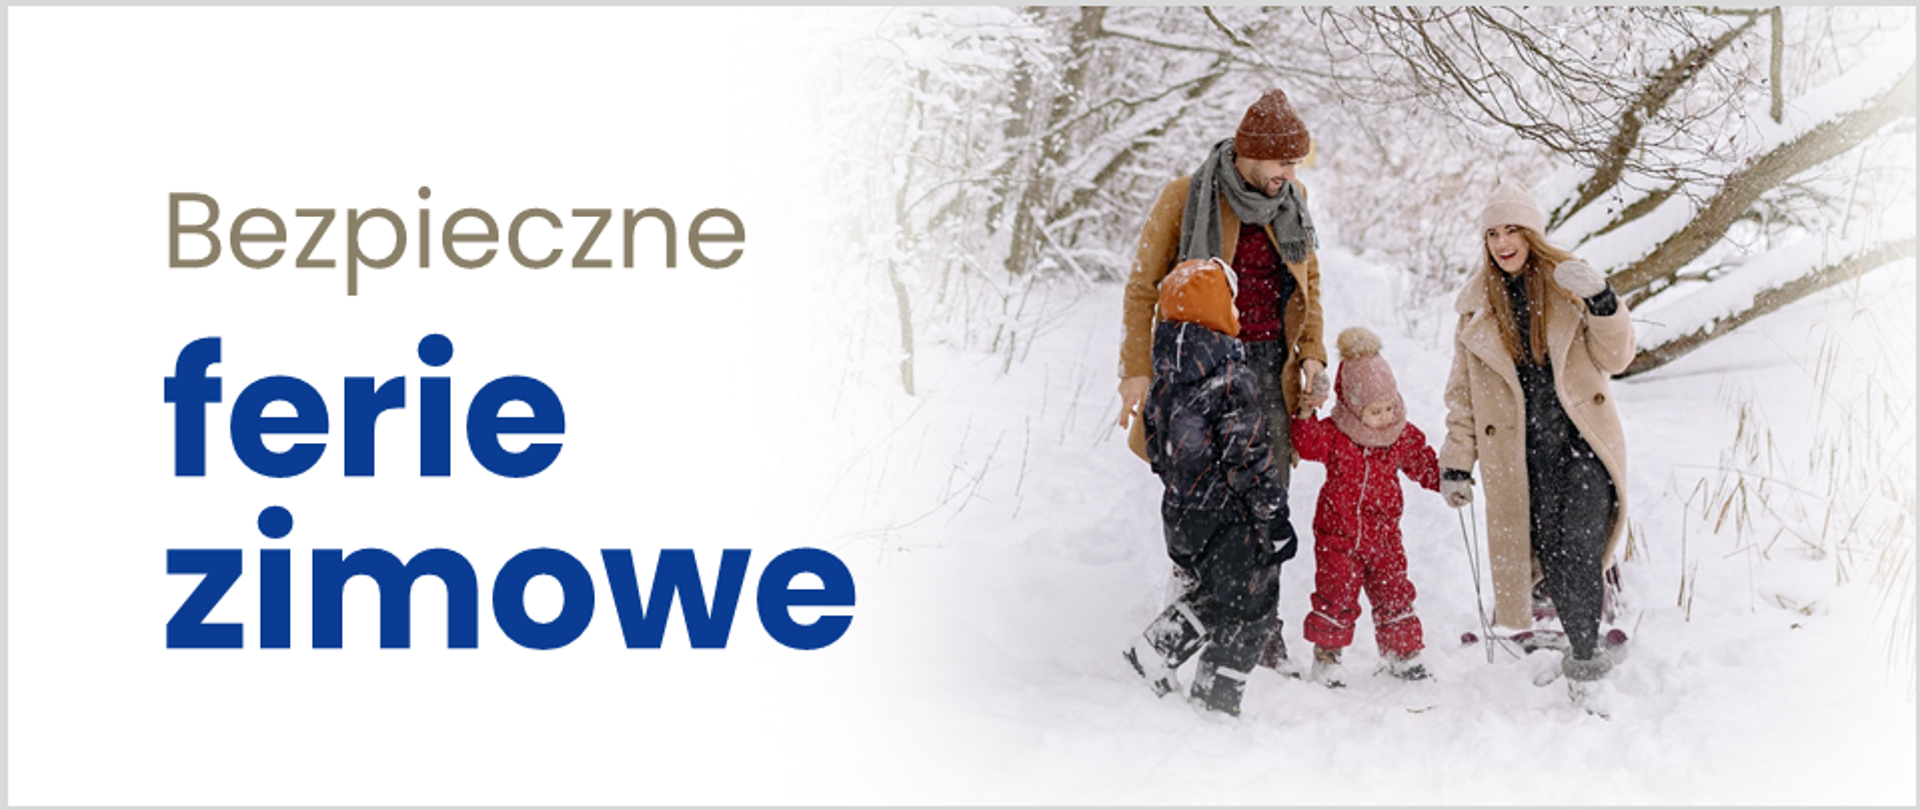 Szczęśliwa rodzina z dójką dzieci spaceruje w zaśnieżonym lesie. Obok napis: "Bezpieczne ferie zimowe"